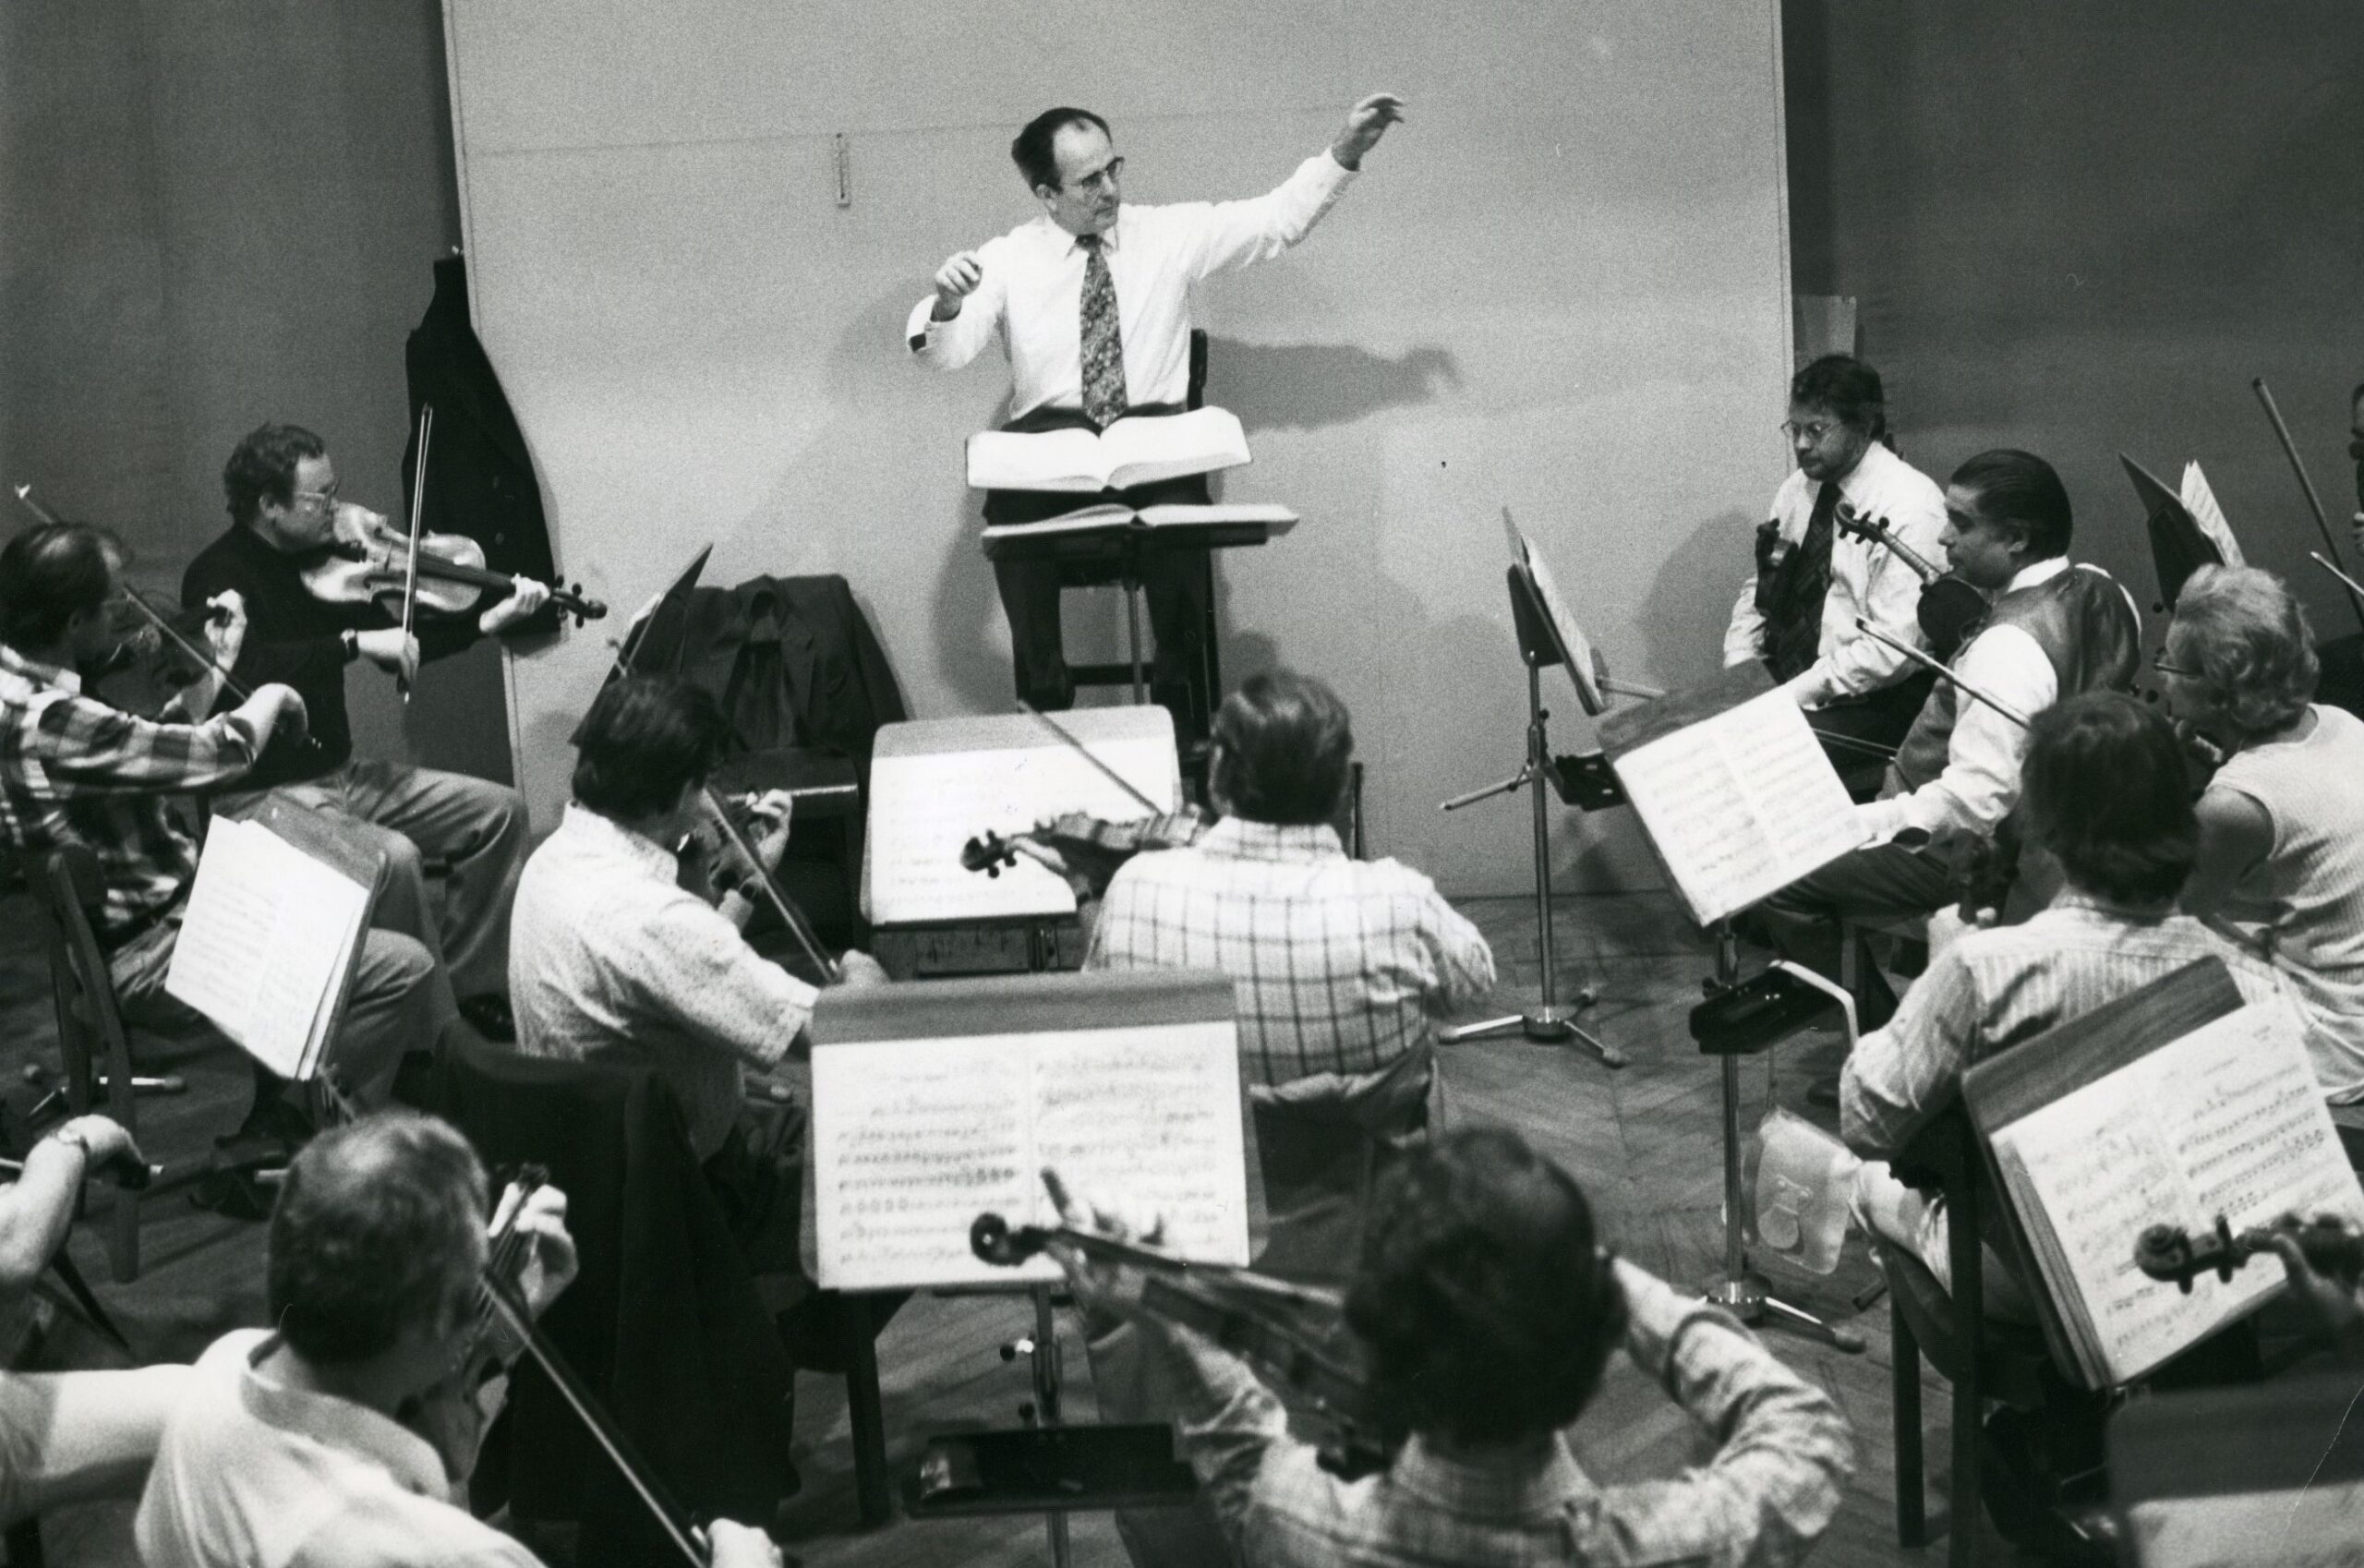 conductor, maestro, Wolfgang Sawallisch, proben, rehearsal, musicians